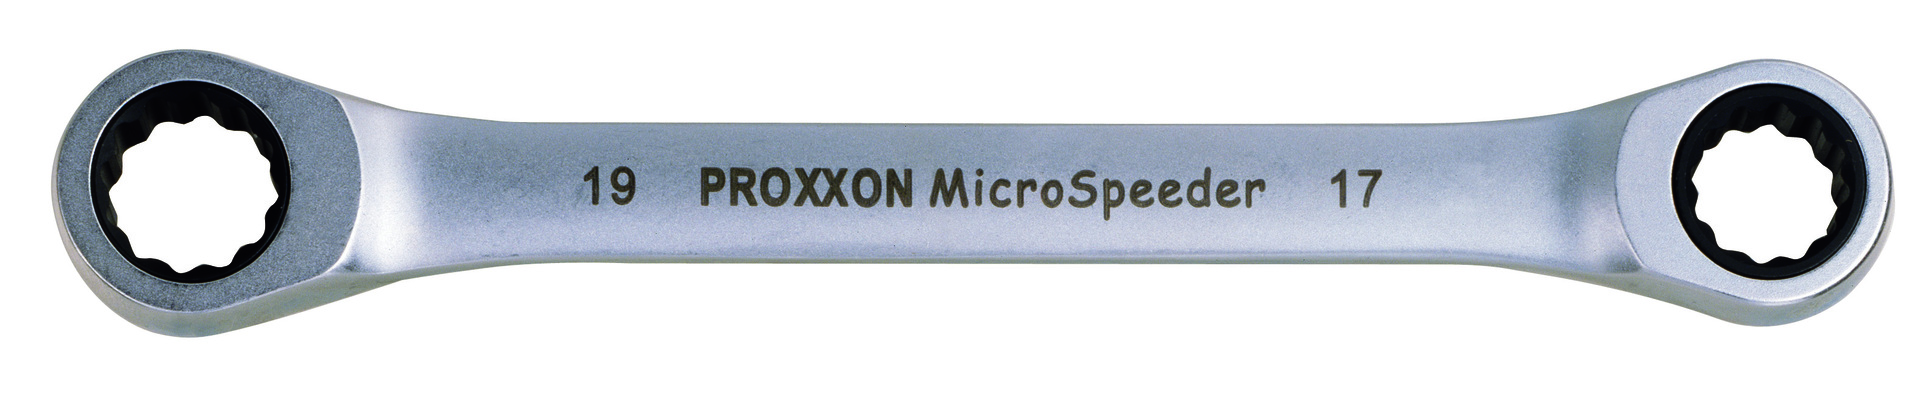 PROXXON GmbH Micro-Speeder Ratschenschlüssel 10x13mm